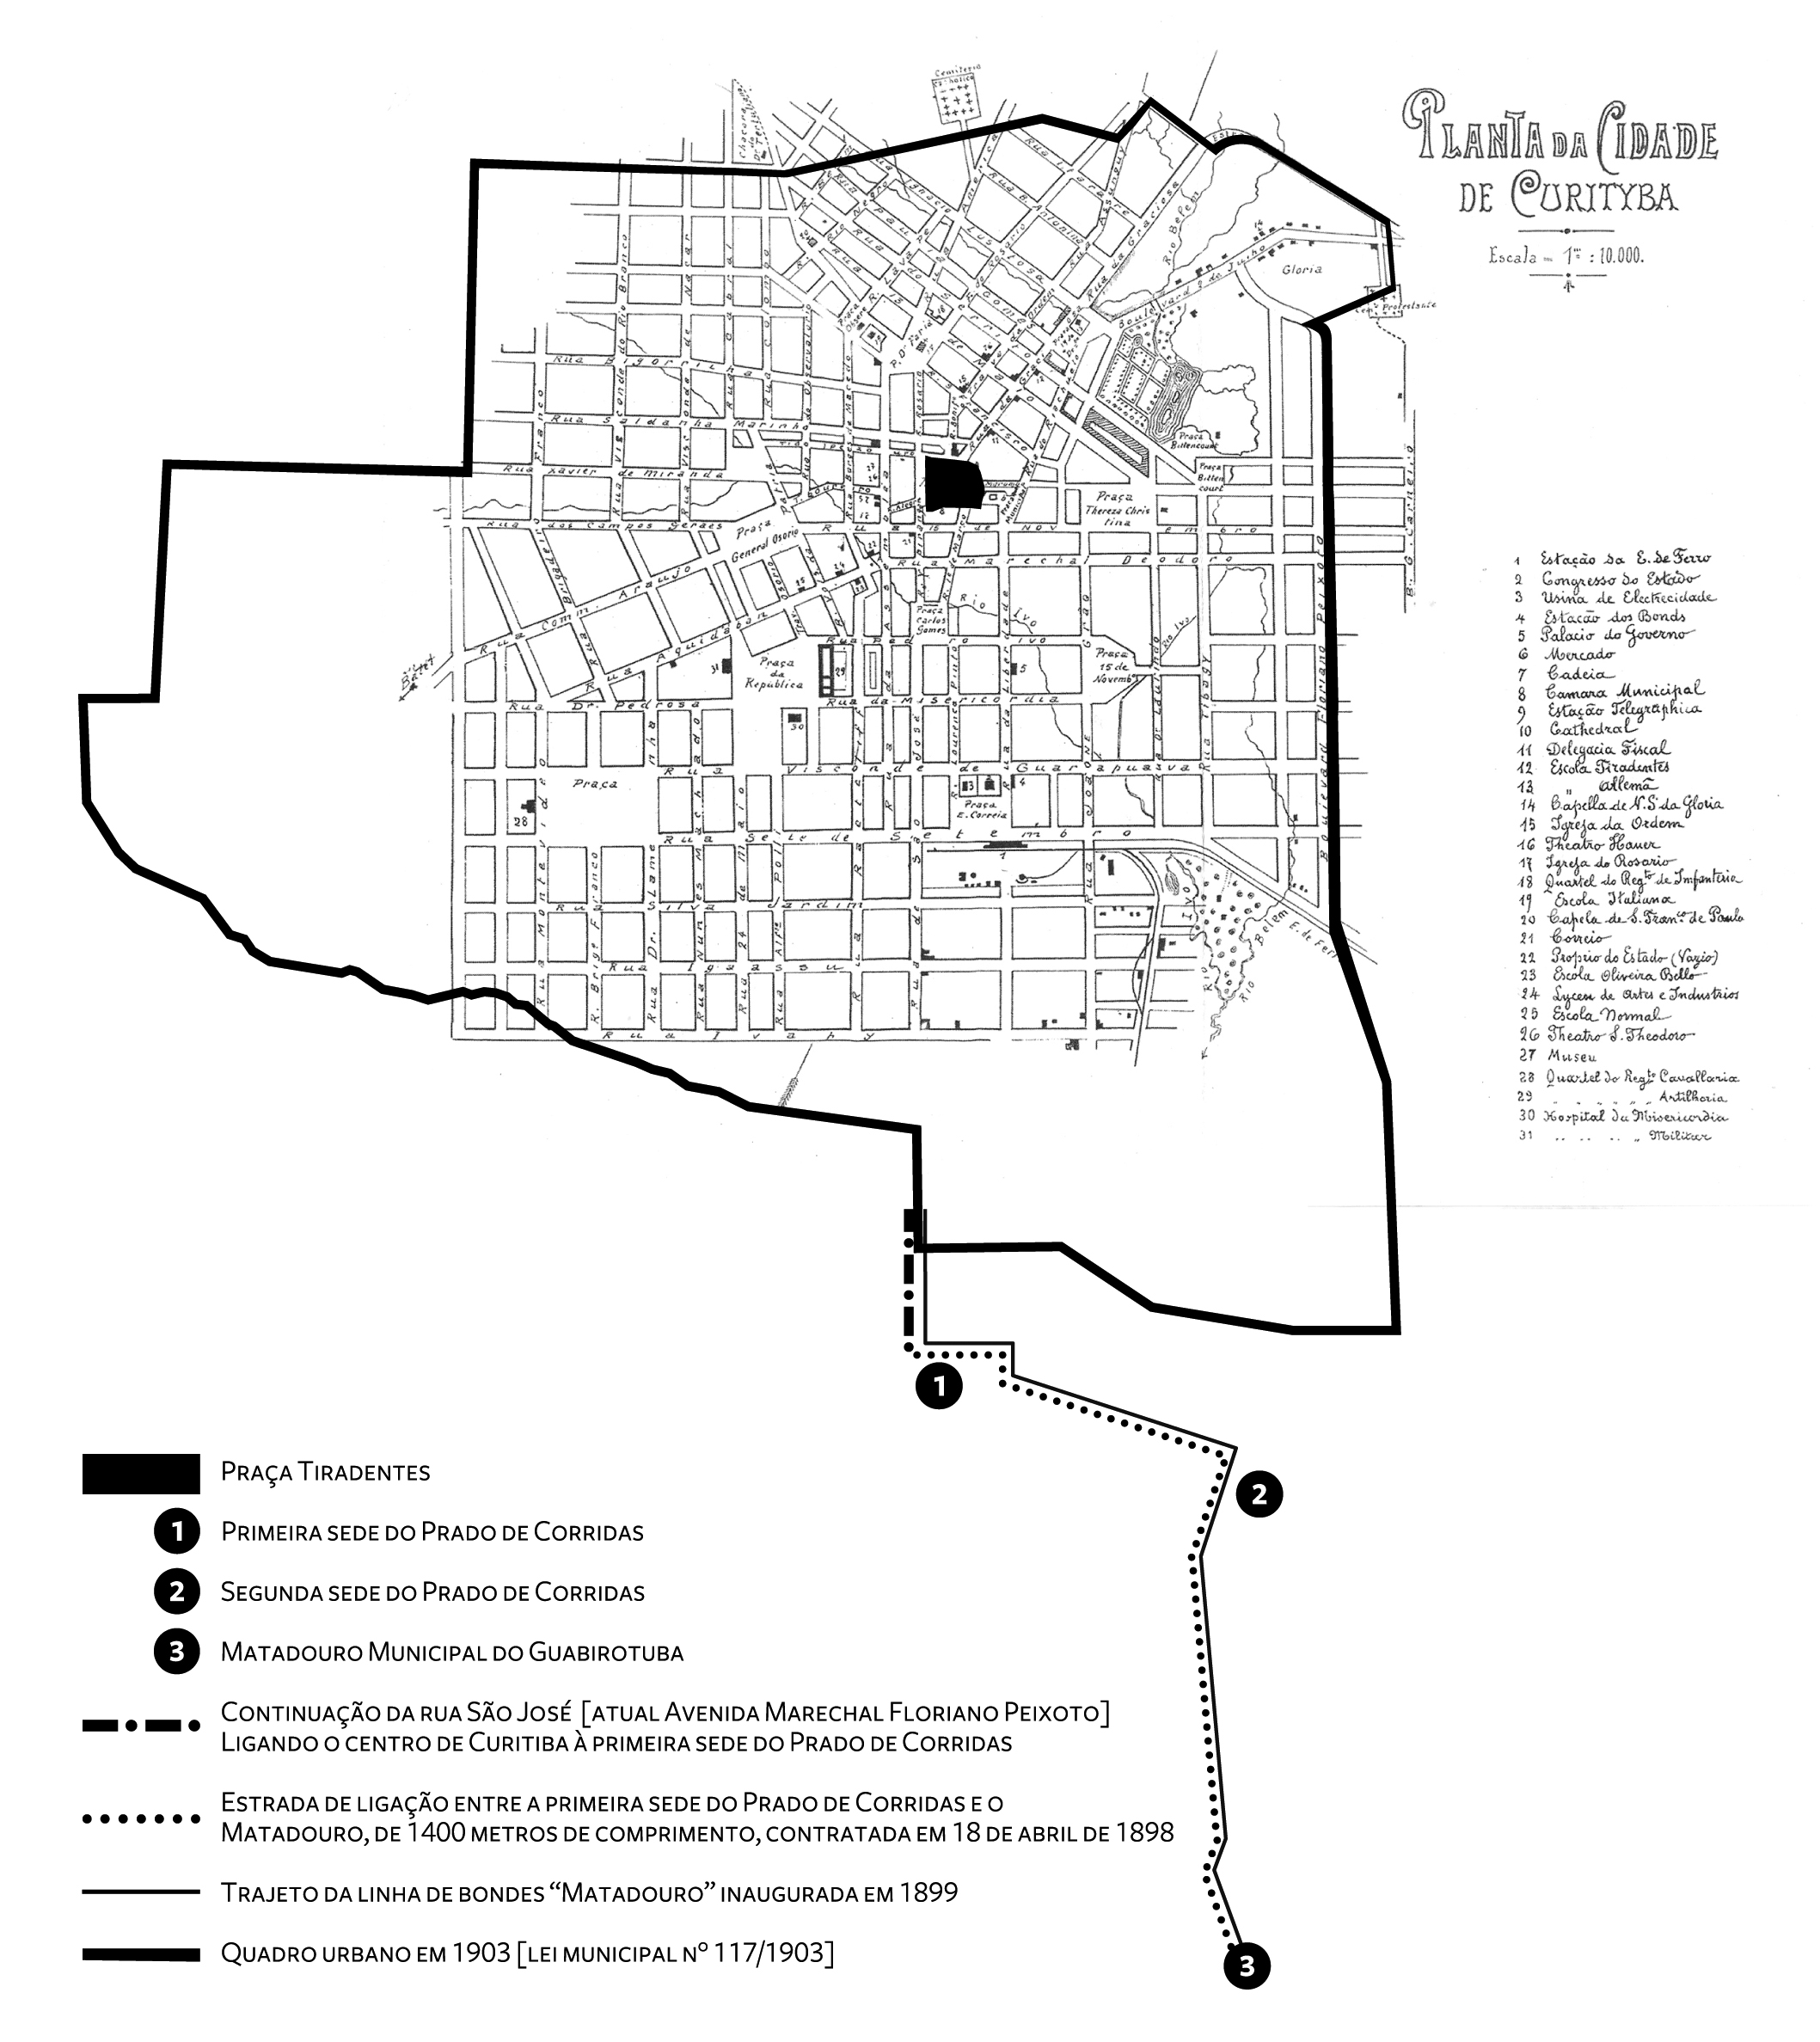 1901 - Mapa de Curitiba In: Almanach Paranaense para o ano de 1900. Curityba: Correia & Comp. 1899.Sobre o desenho da cidade está traçado o perímetro do quadro urbano definido em 1903. Fora da sua delimitação, no rocio, estão localizados os empreendimentos inicias na região do Guabirotuba: a primeira sede do Prado de Corridas (1), inaugurada em 1874; a segunda sede (2) e o Matadouro Municipal (3), de 1899. Destaca-se, também, a ligação entre o centro da cidade (Praça Tiradentes) e a primeira sede do Prado de Corridas, datada de 1874 (prolongamento da Rua São José, depois Marechal Floriano); o trecho de estrada entre este e o matadouro, contratada em 1898; e a linha de bondes, inaugurada em 1899.